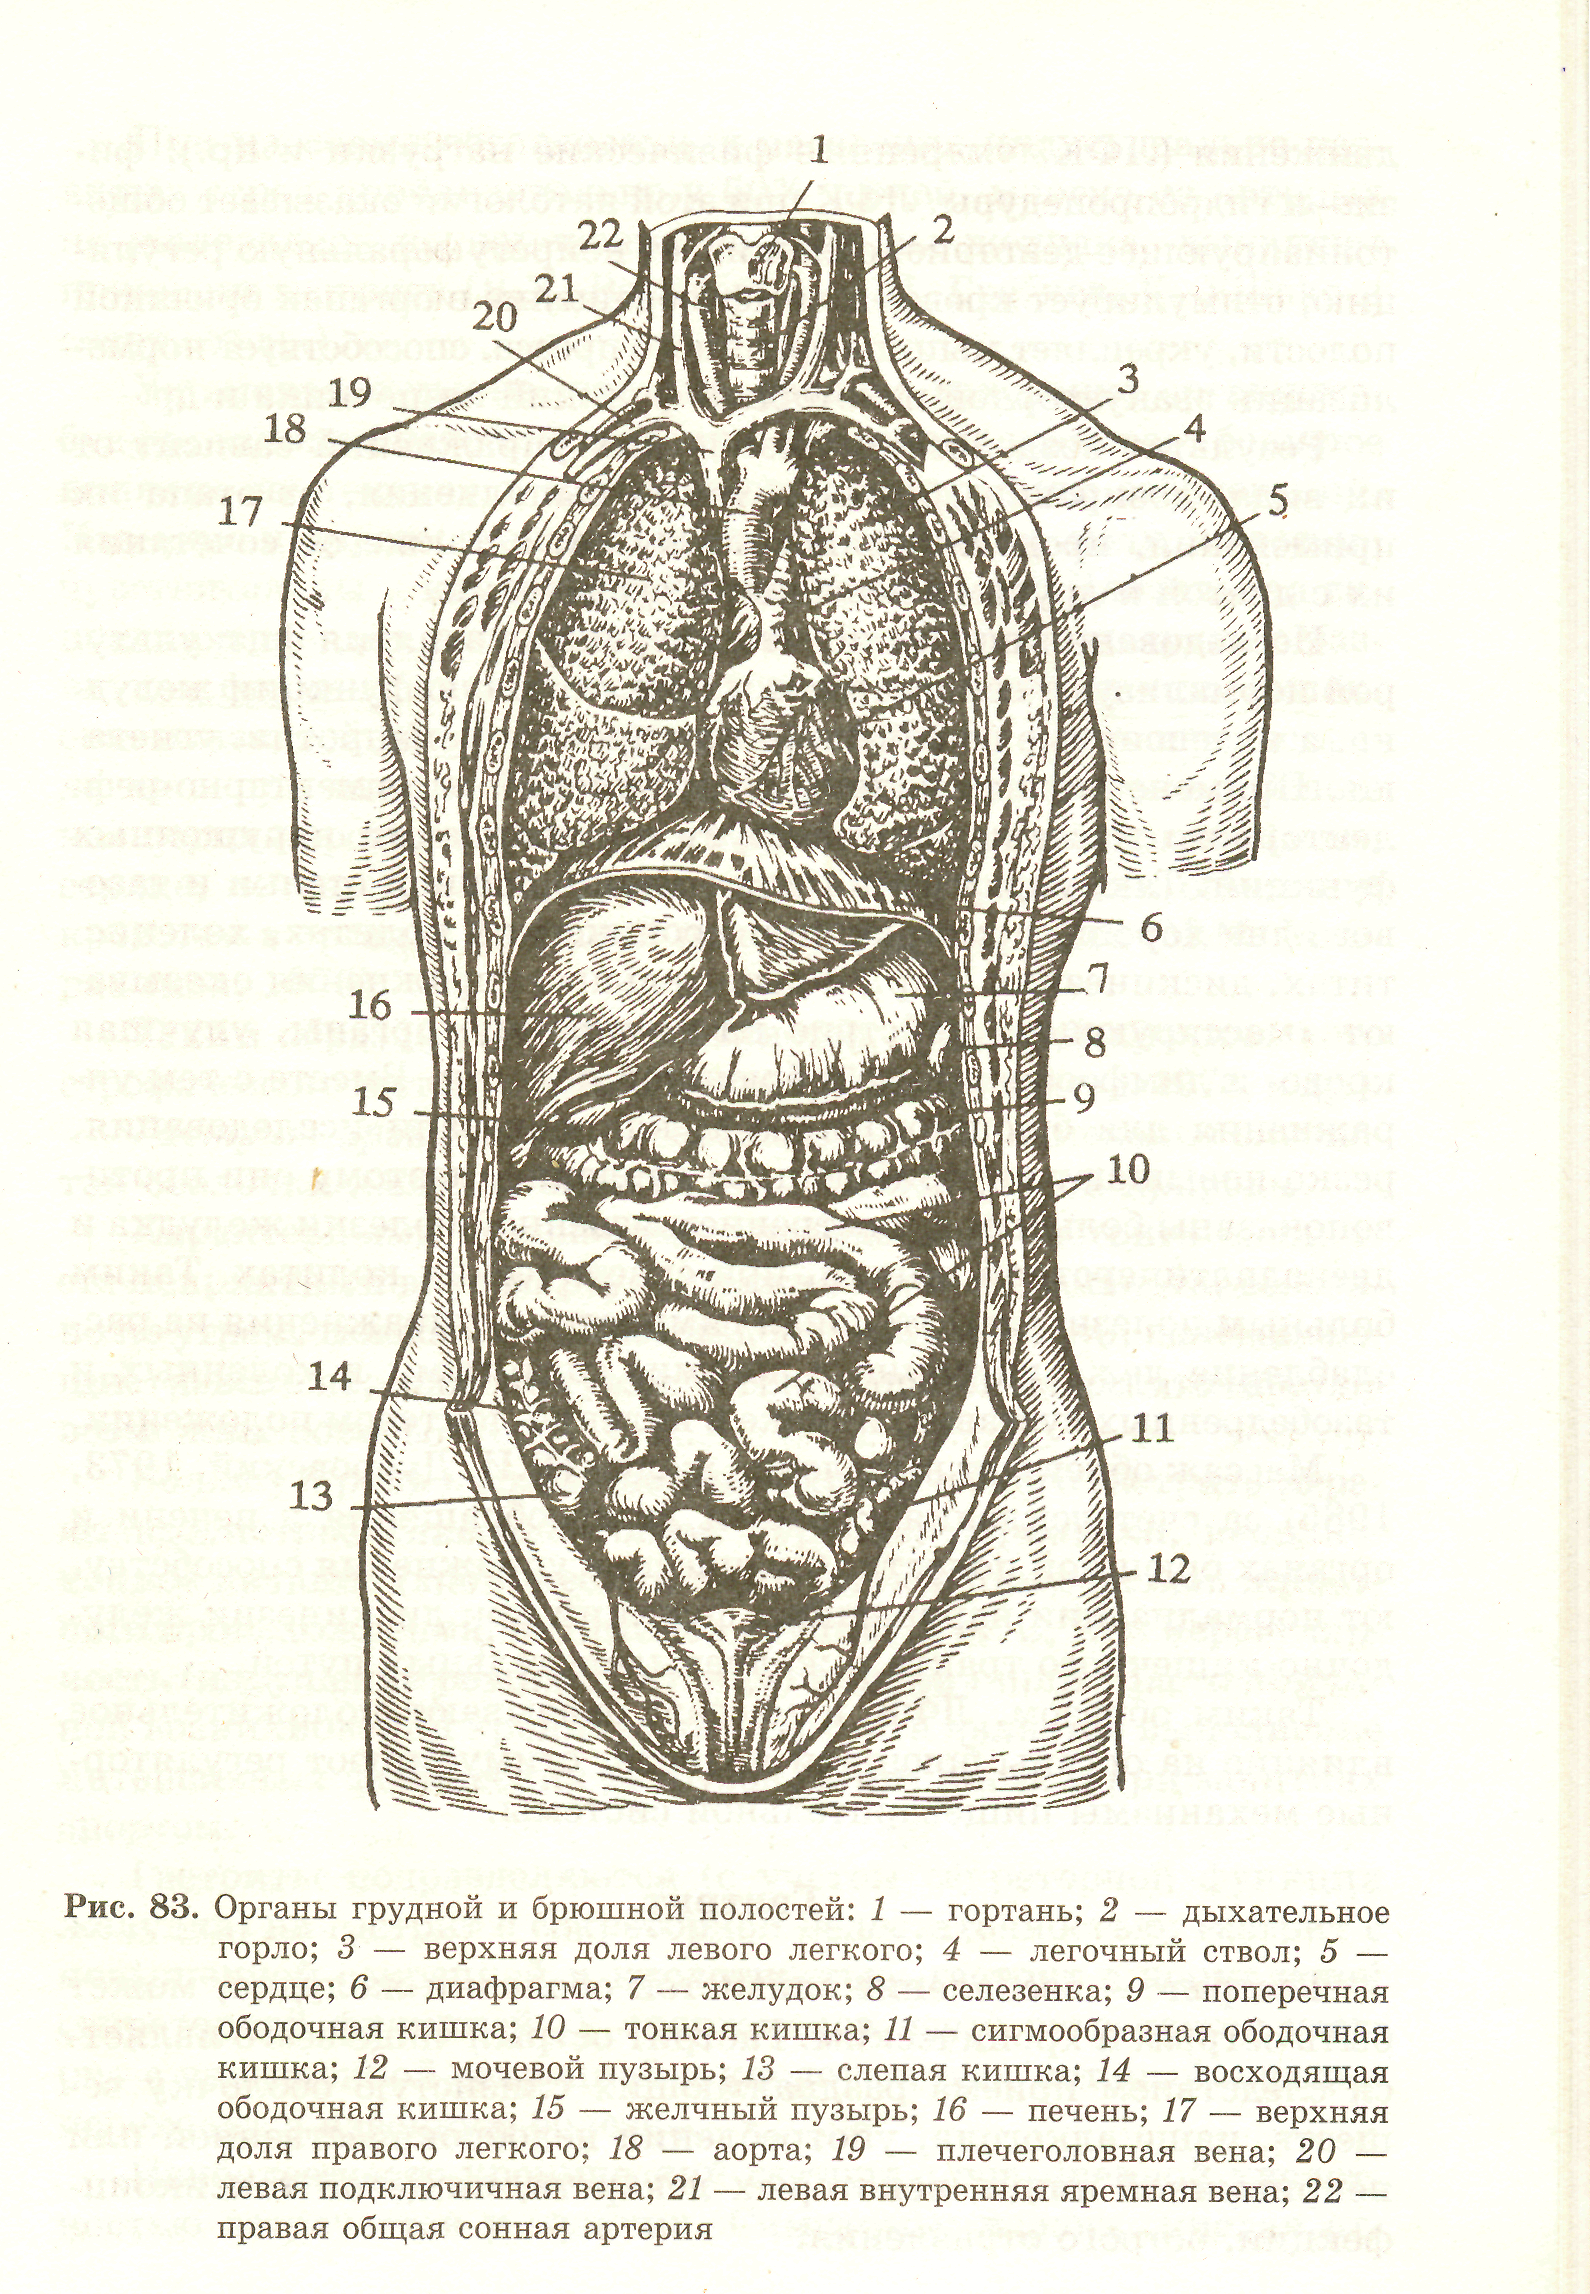 Какие органы расположены в нижней полости. Анатомическая схема брюшной полости.